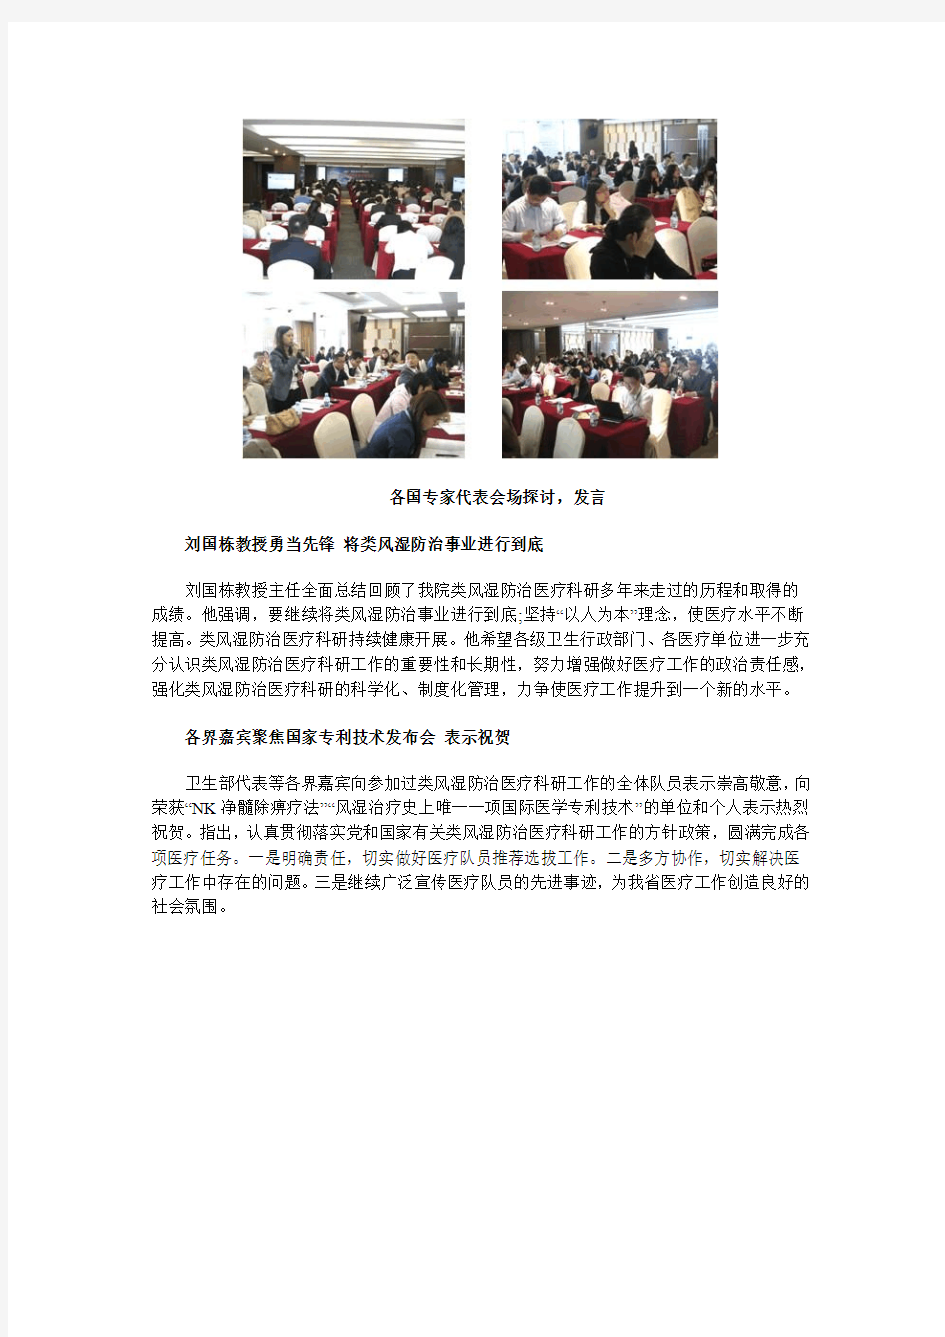 我院刘国栋教授受邀参加卫生部《净髓除痹疗法》专利发布会